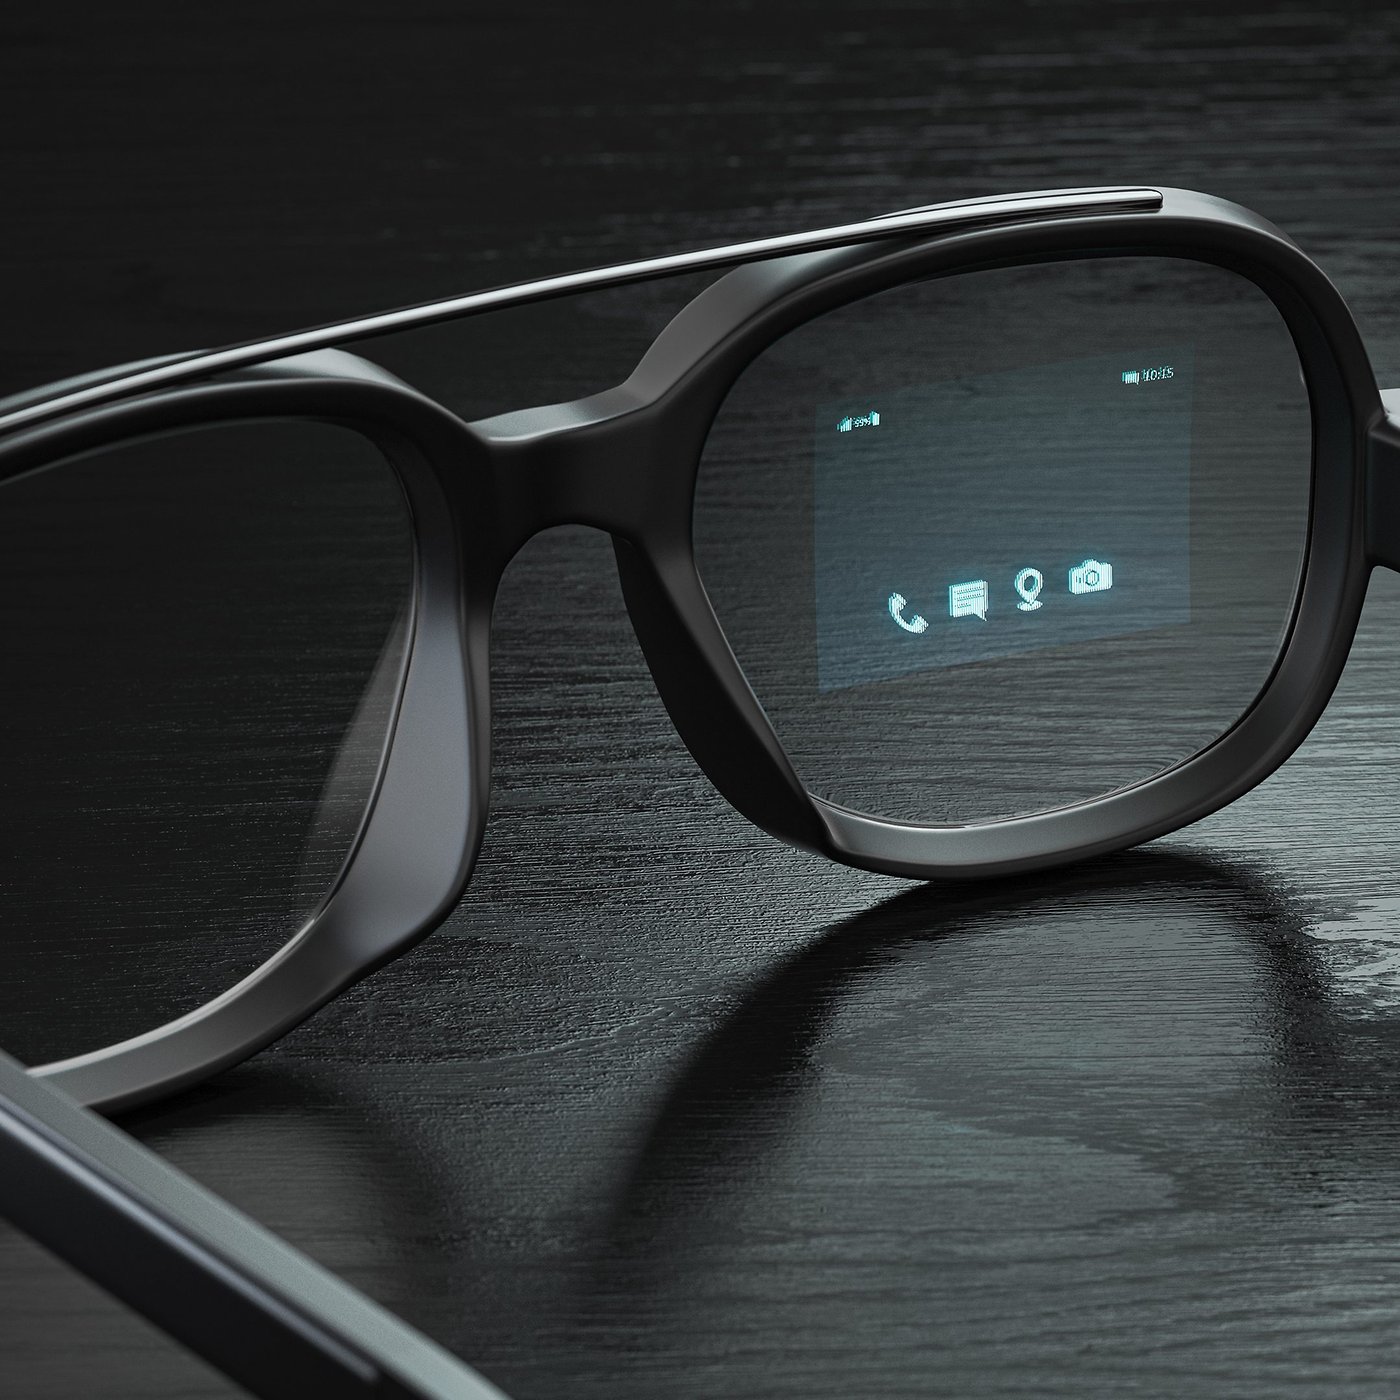 Ray-Ban Stories : les lunettes-caméra de Meta maintenant en vente à 329 €